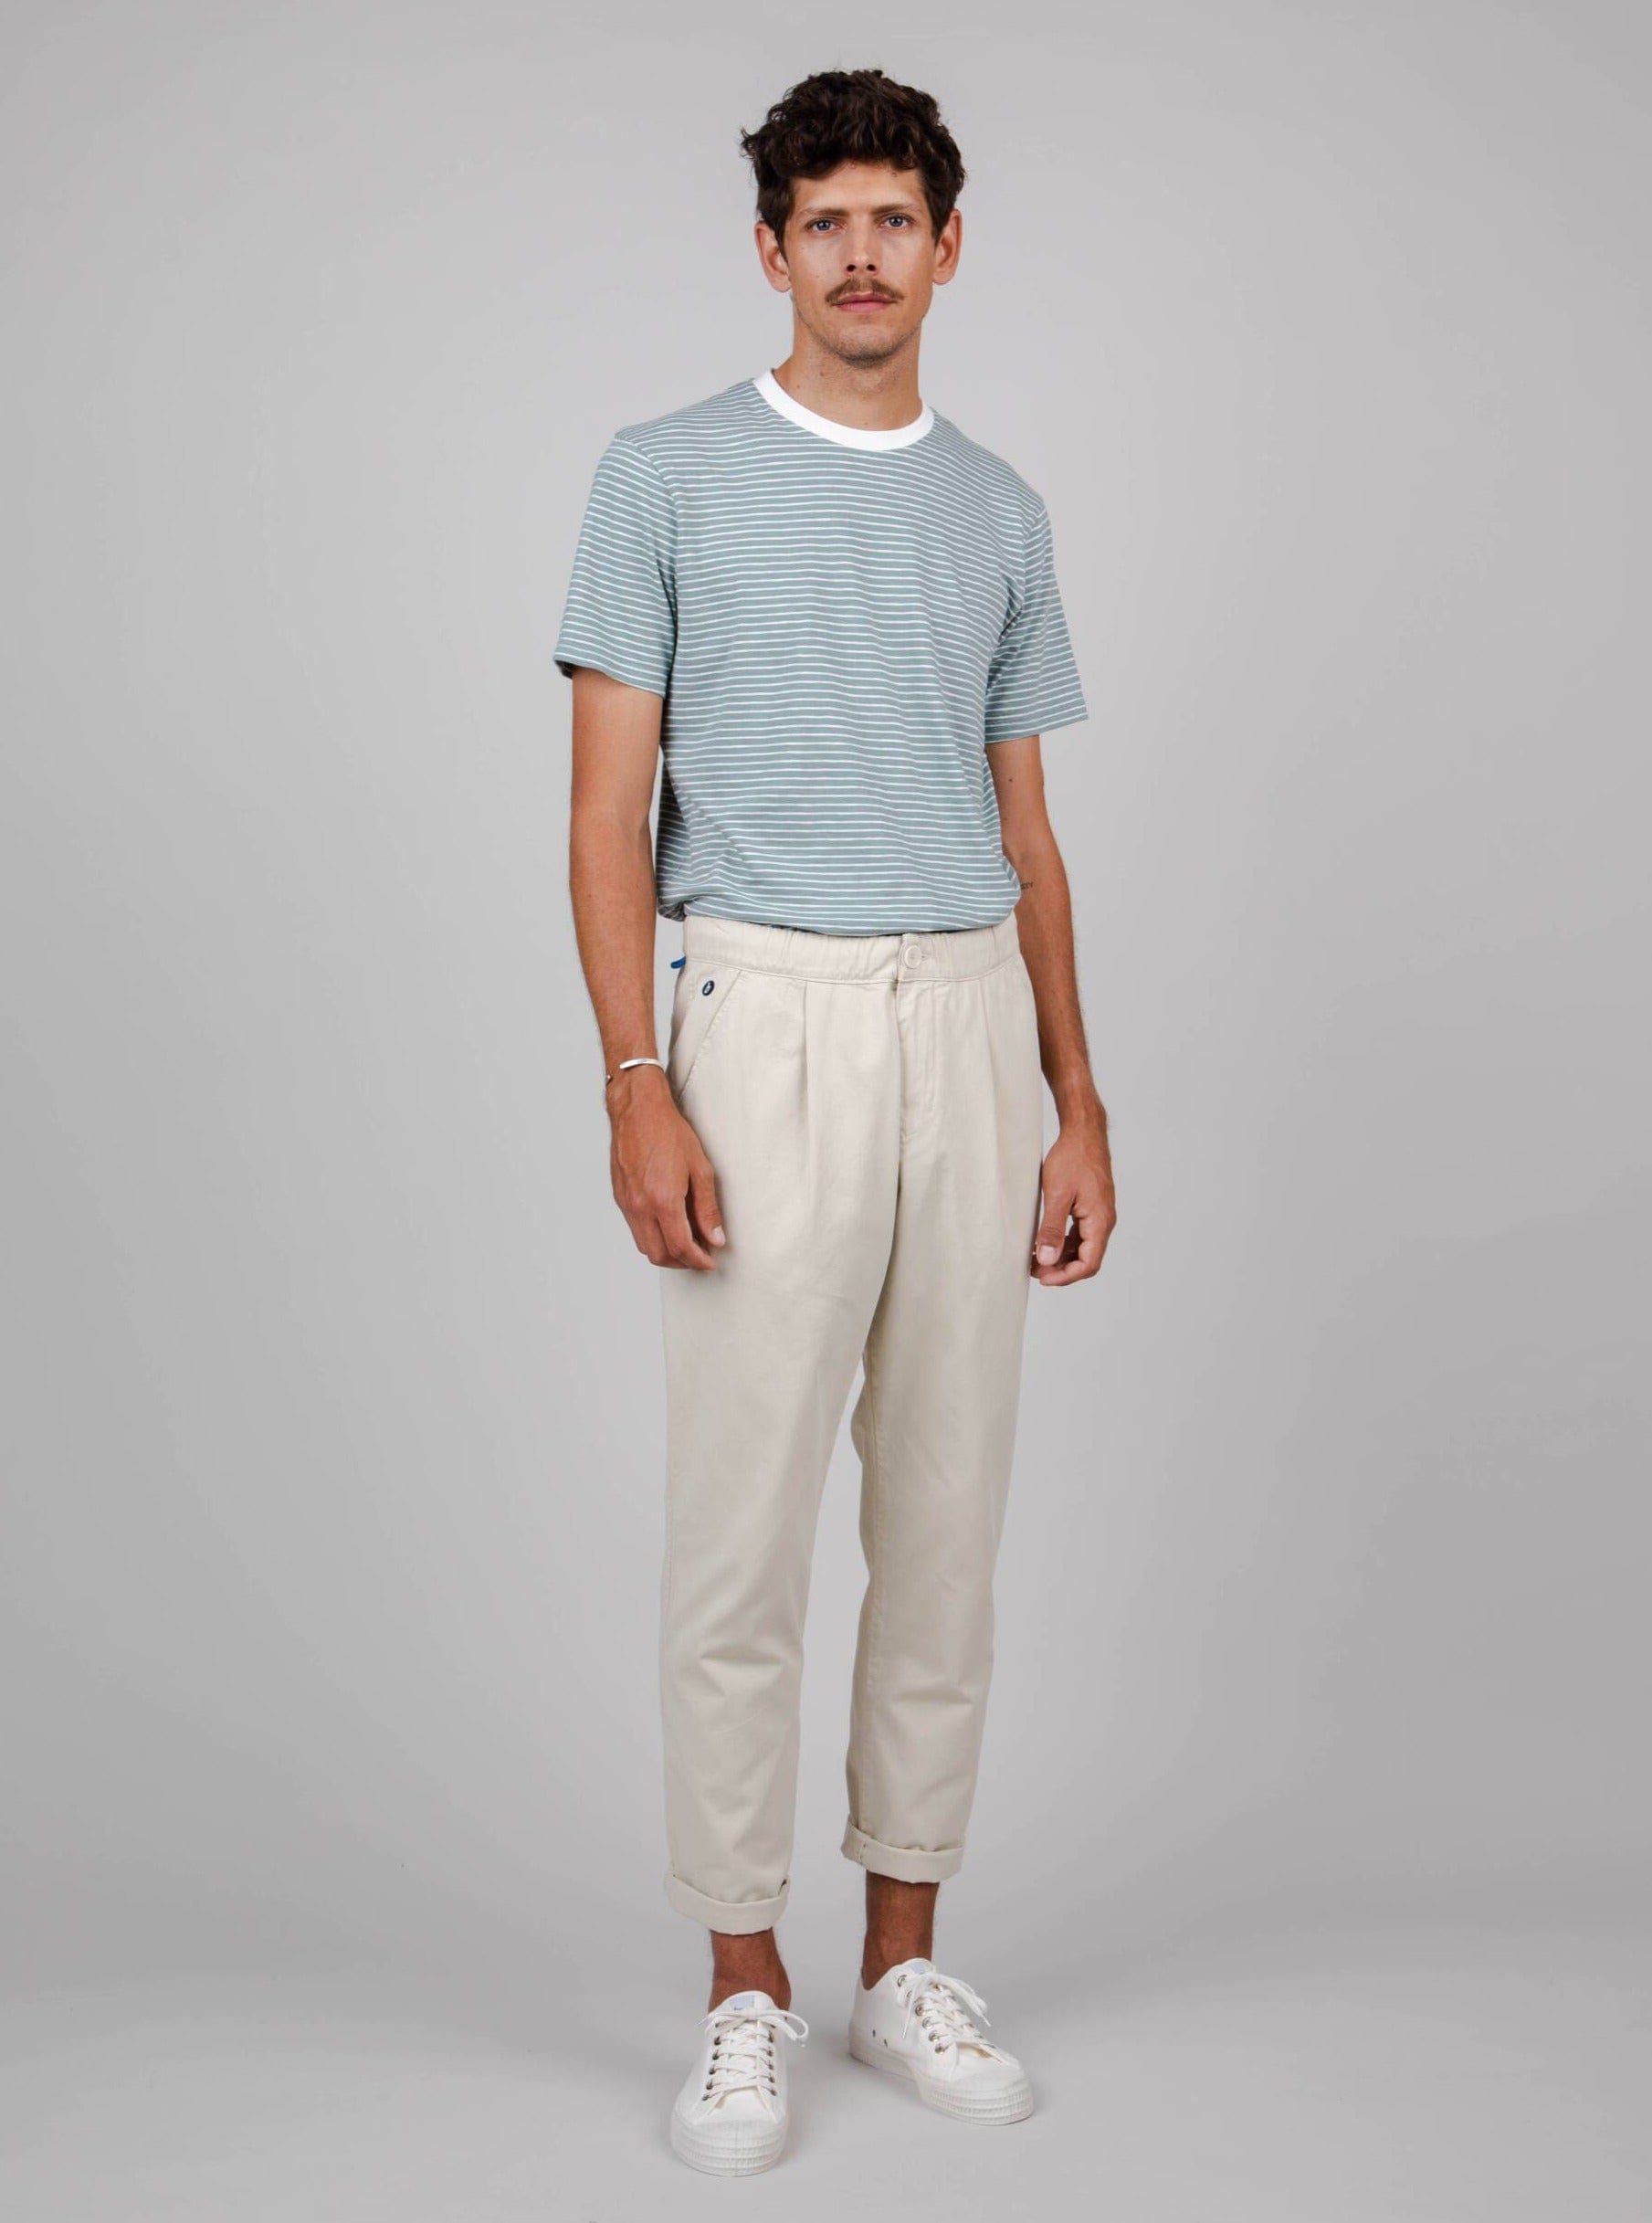 Brava Fabrics bukser Comfort Chino Sand i økologisk bomuld bæredygtig mode etisk mode